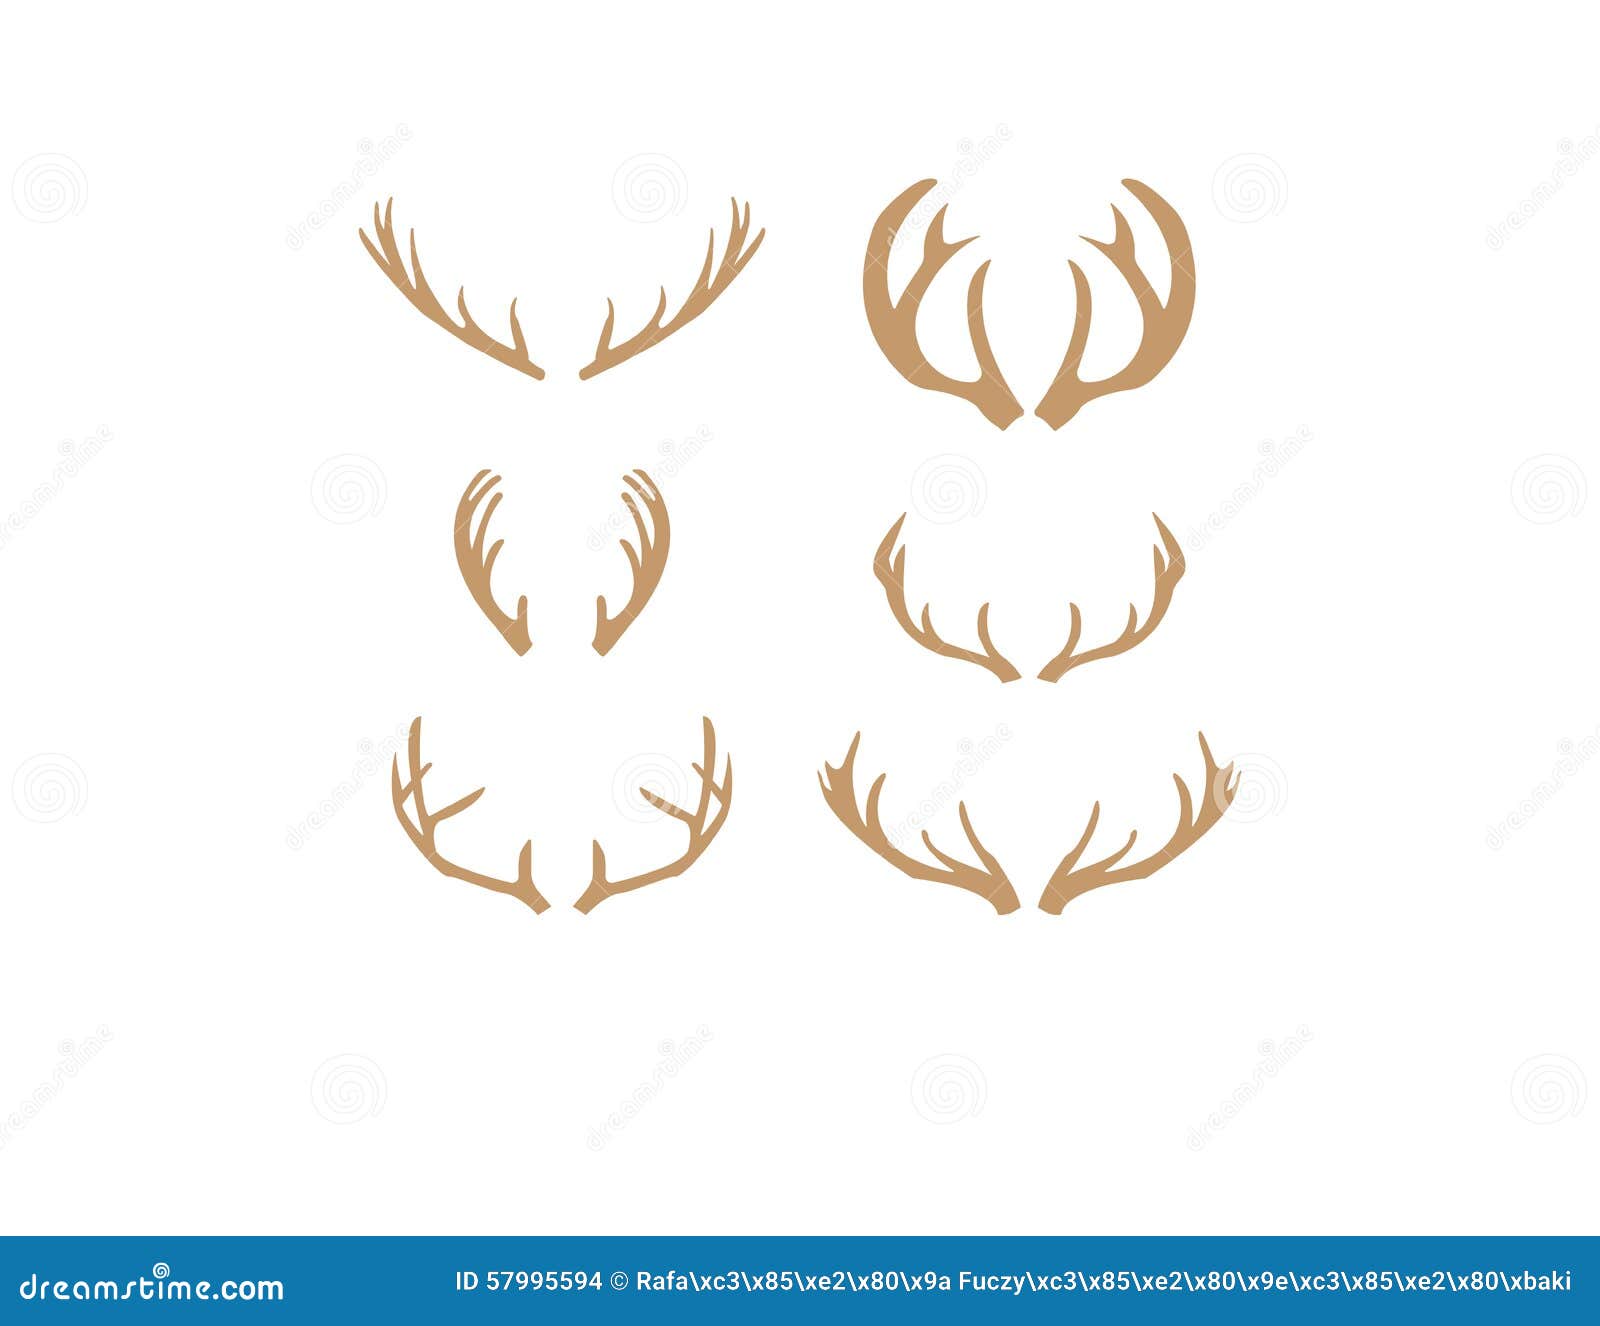 brown silhouettes of deer antlers 